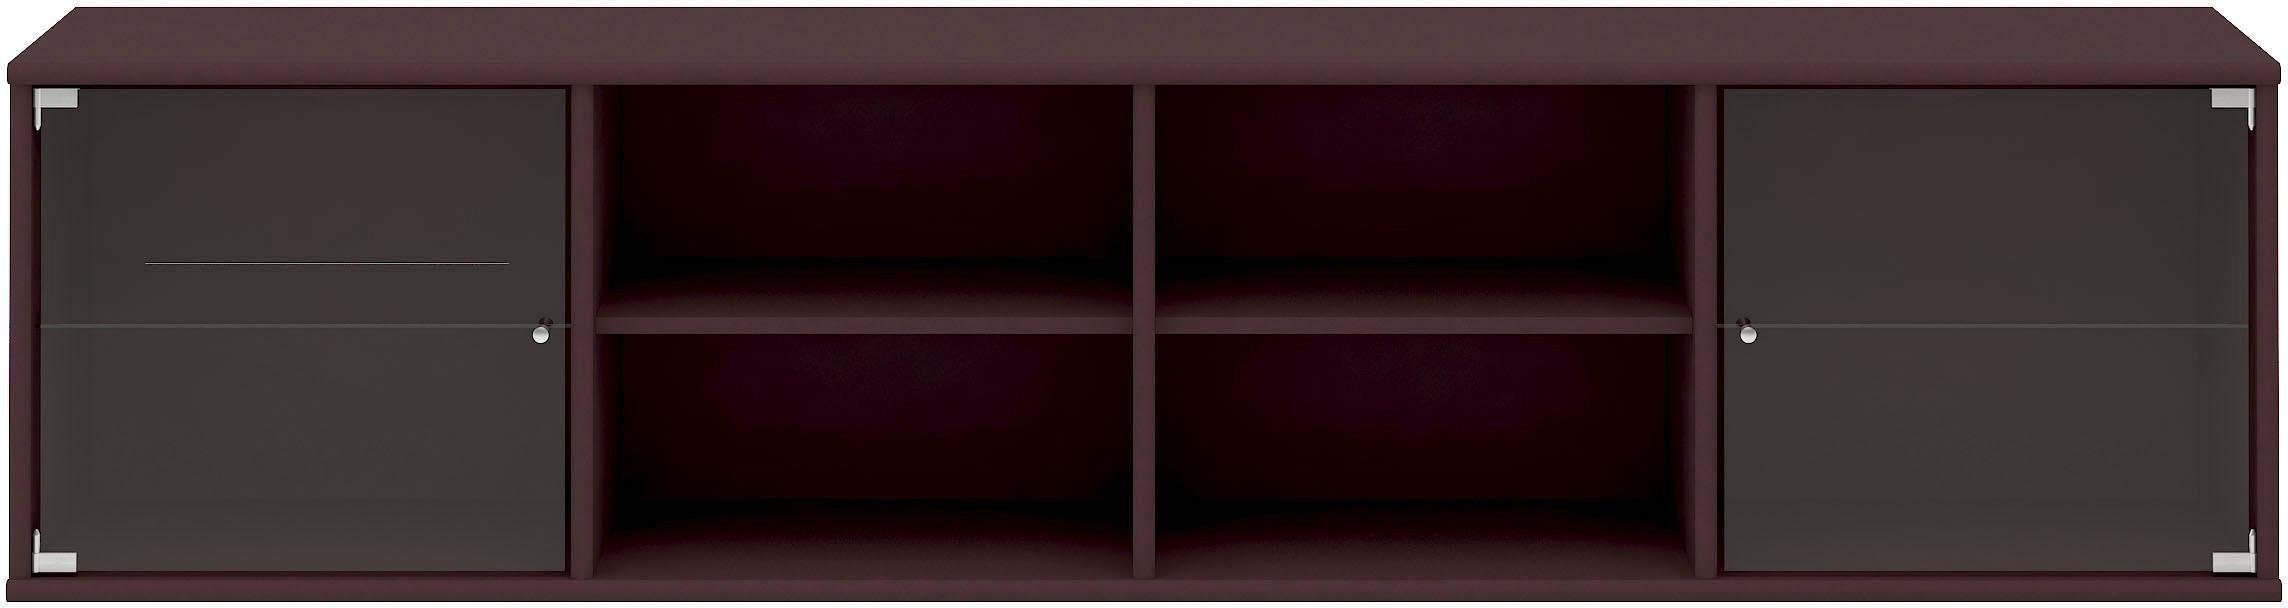 Hammel Furniture Regal Mistral, Hochwertig Lowboard, hängend/stehend montierbar, mit zwei Glastüren, B: 177 cm, lowboard, anpassungsbar Designmöbel bordeaux